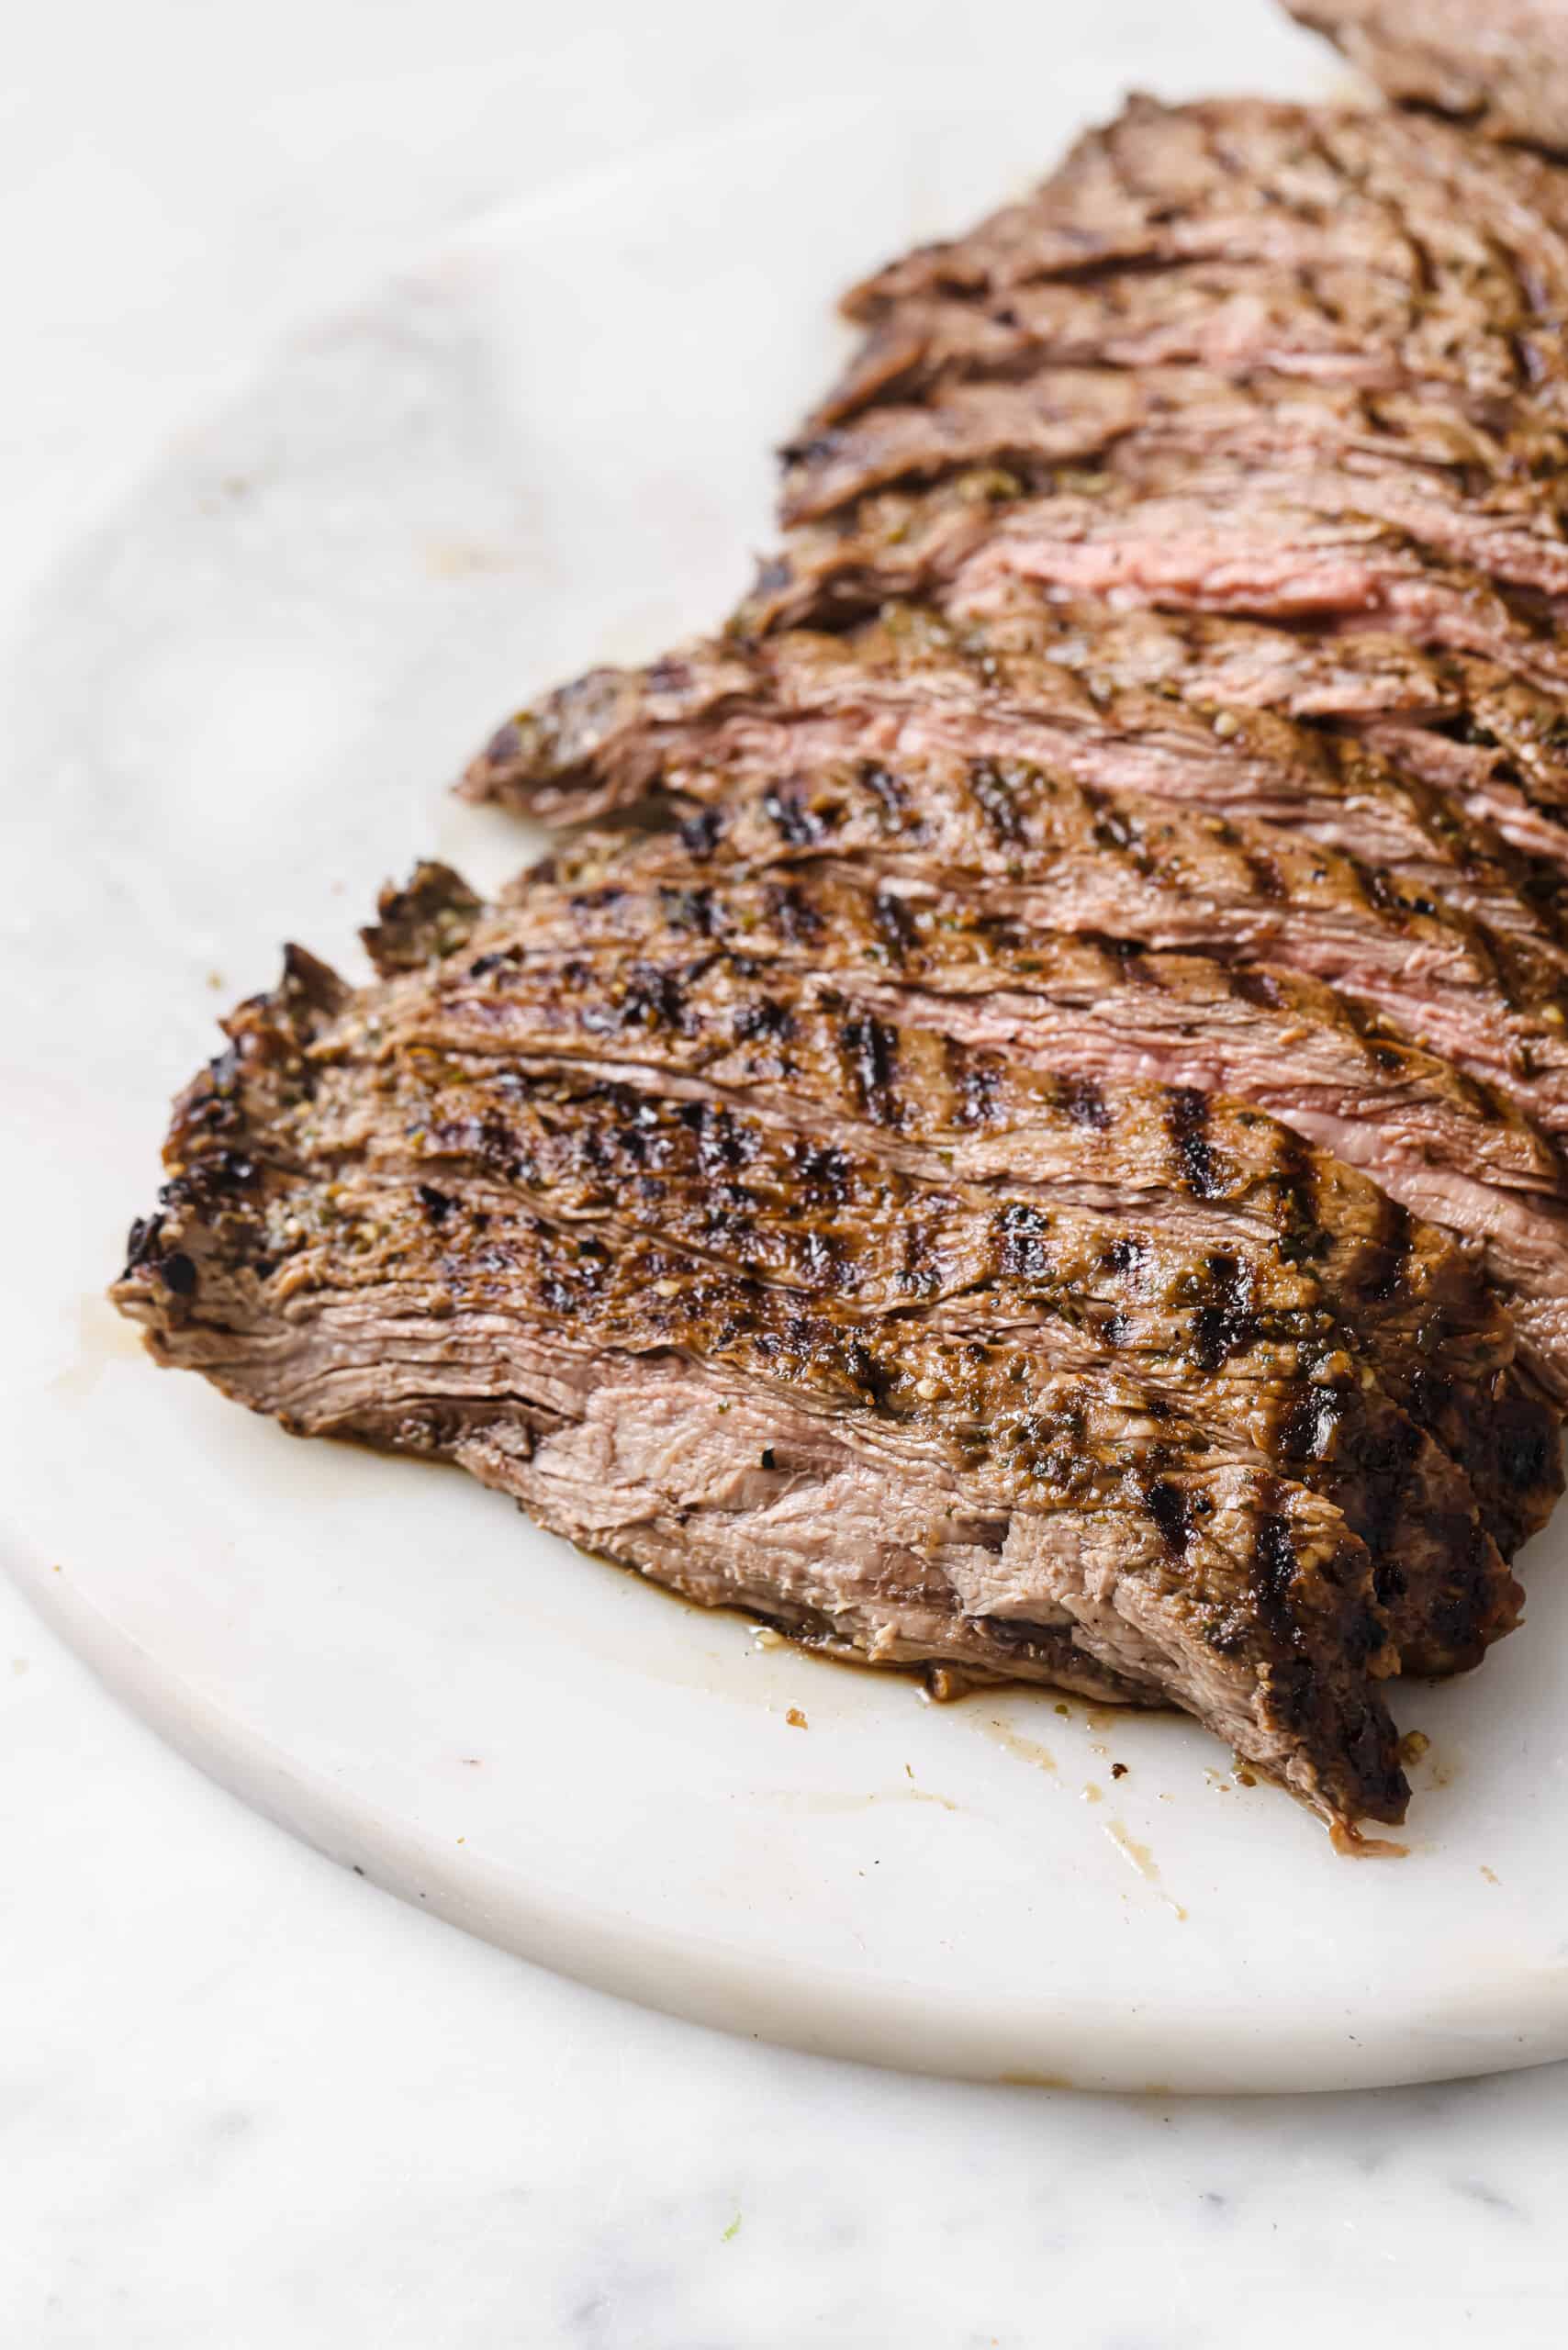 Sliced grilled steak.